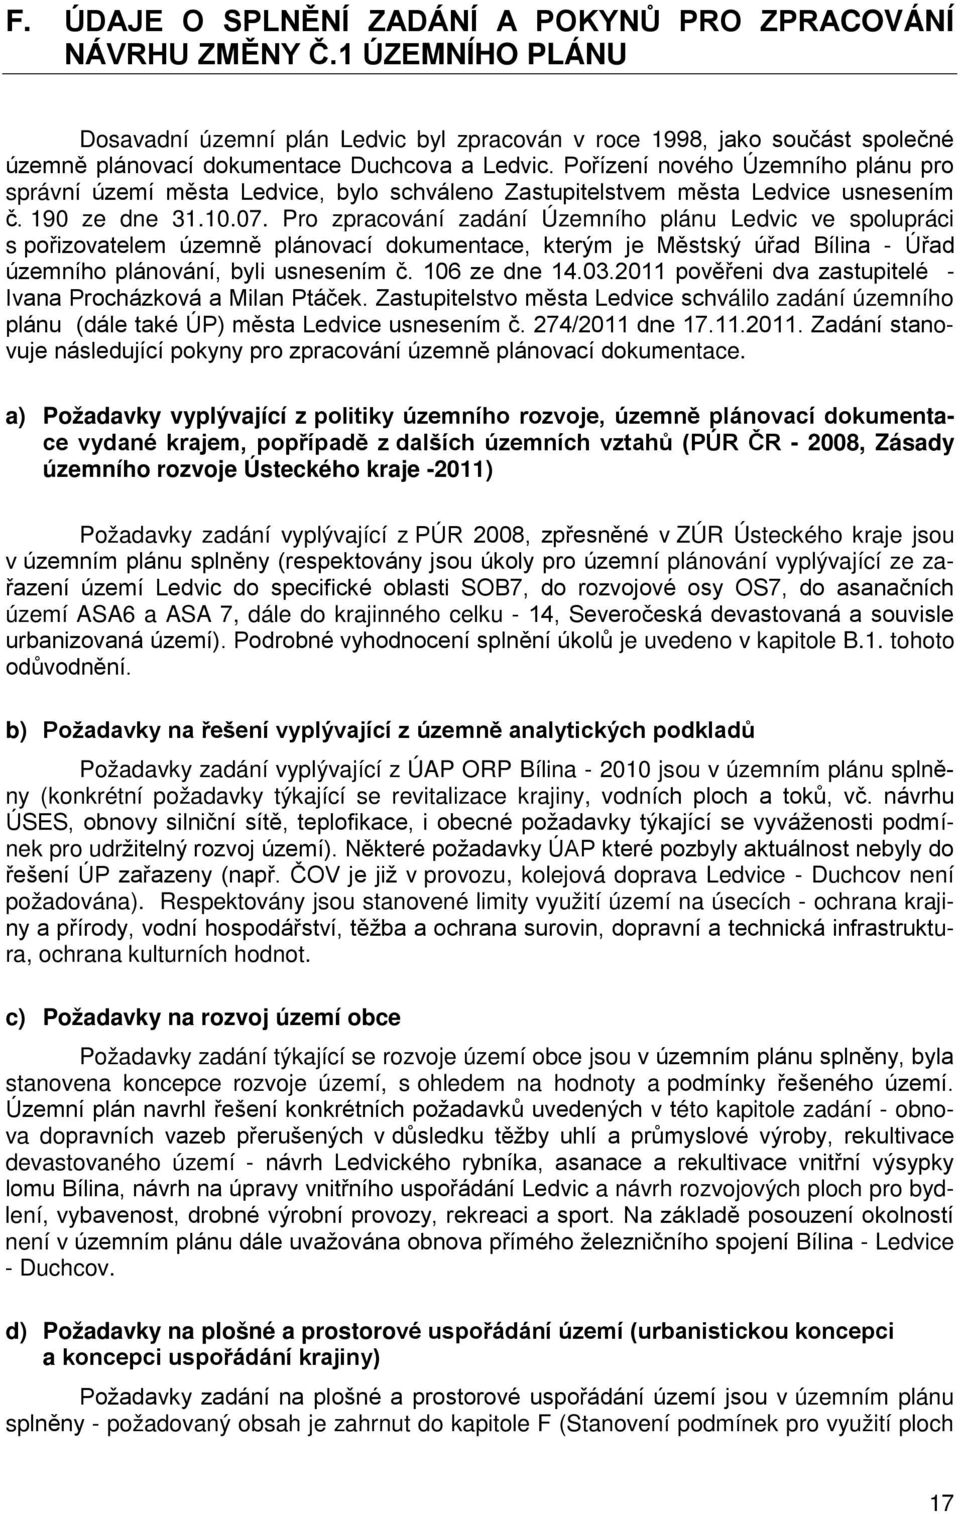 Pořízení nového Územního plánu pro správní území města Ledvice, bylo schváleno Zastupitelstvem města Ledvice usnesením č. 190 ze dne 31.10.07.